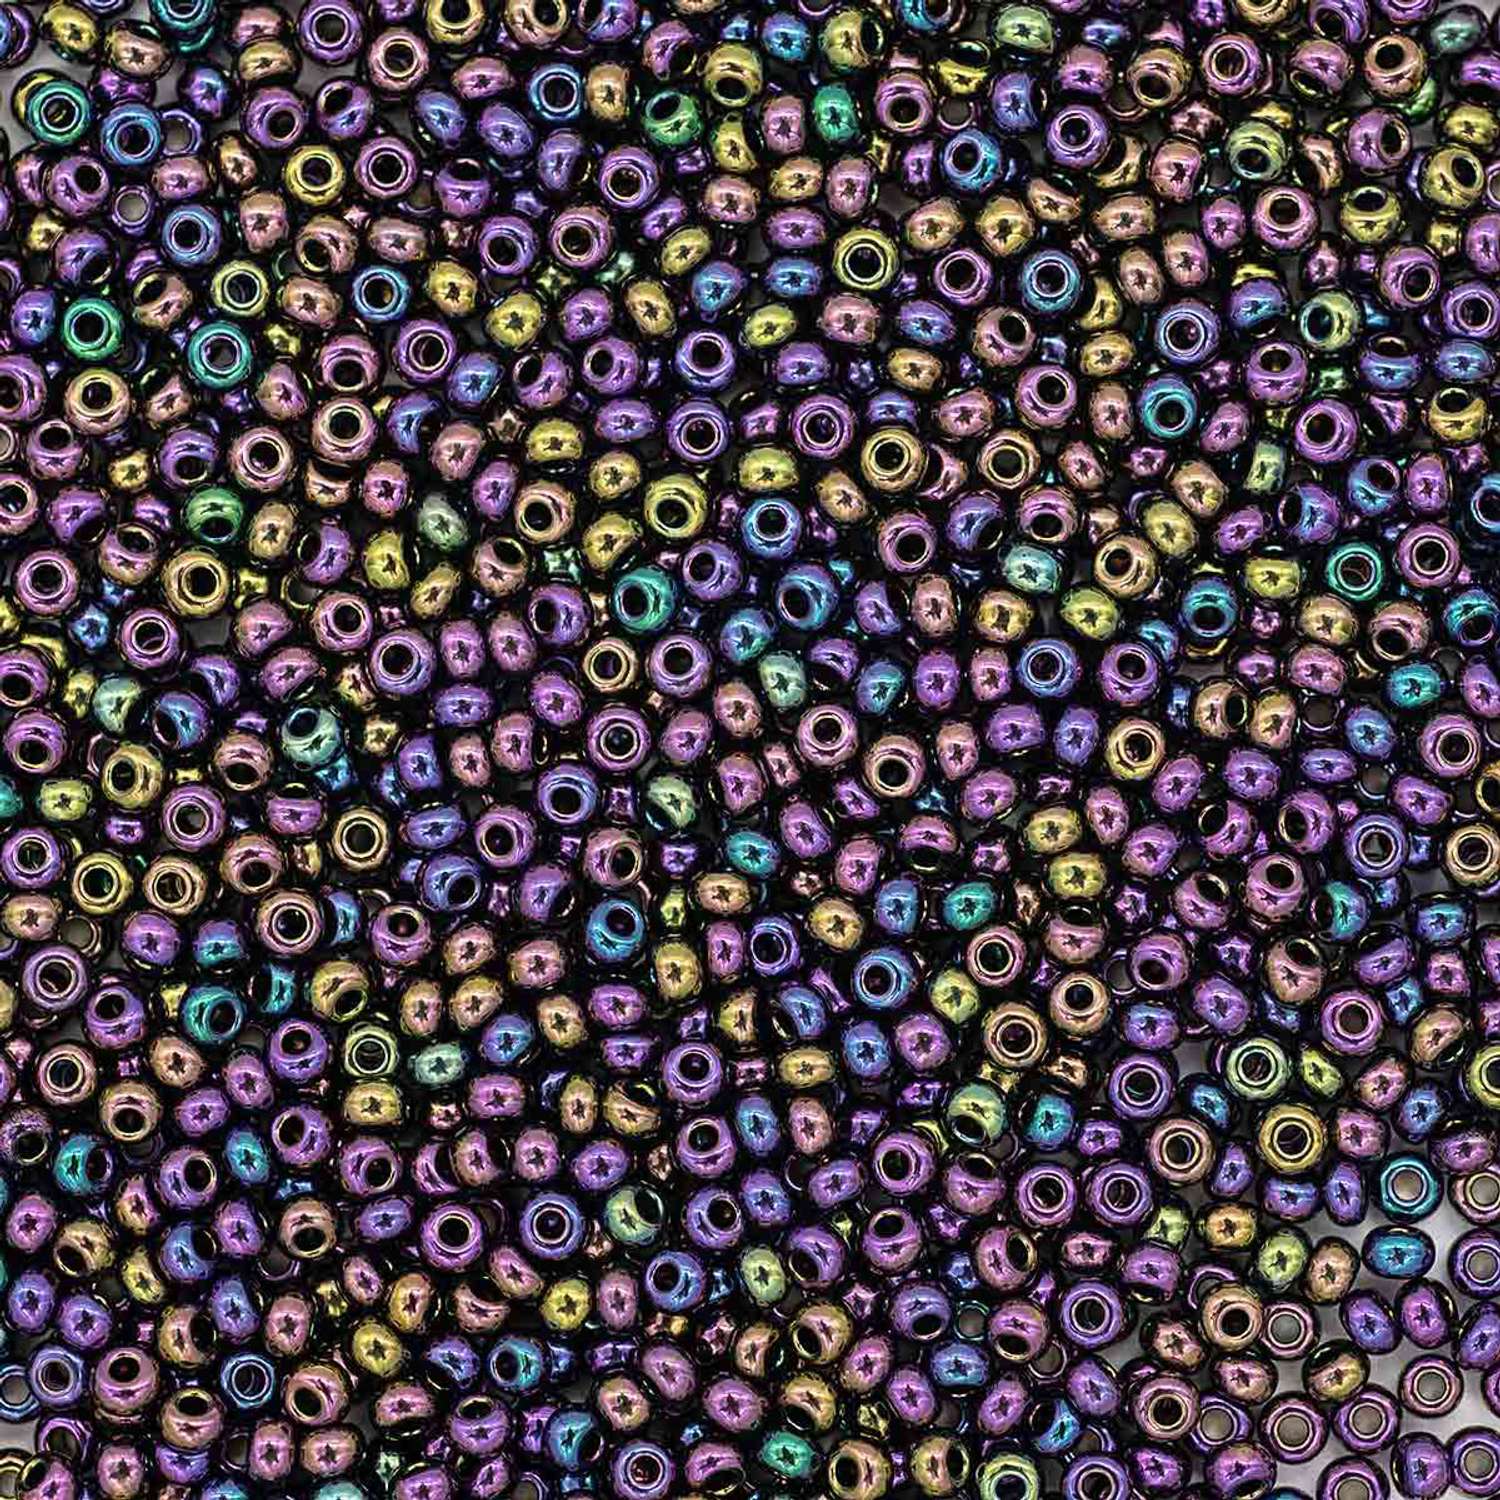 Бисер Preciosa чешский цветной радужный 10/0 20 гр Прециоза 59195 бордово-фиолетовый - фото 2